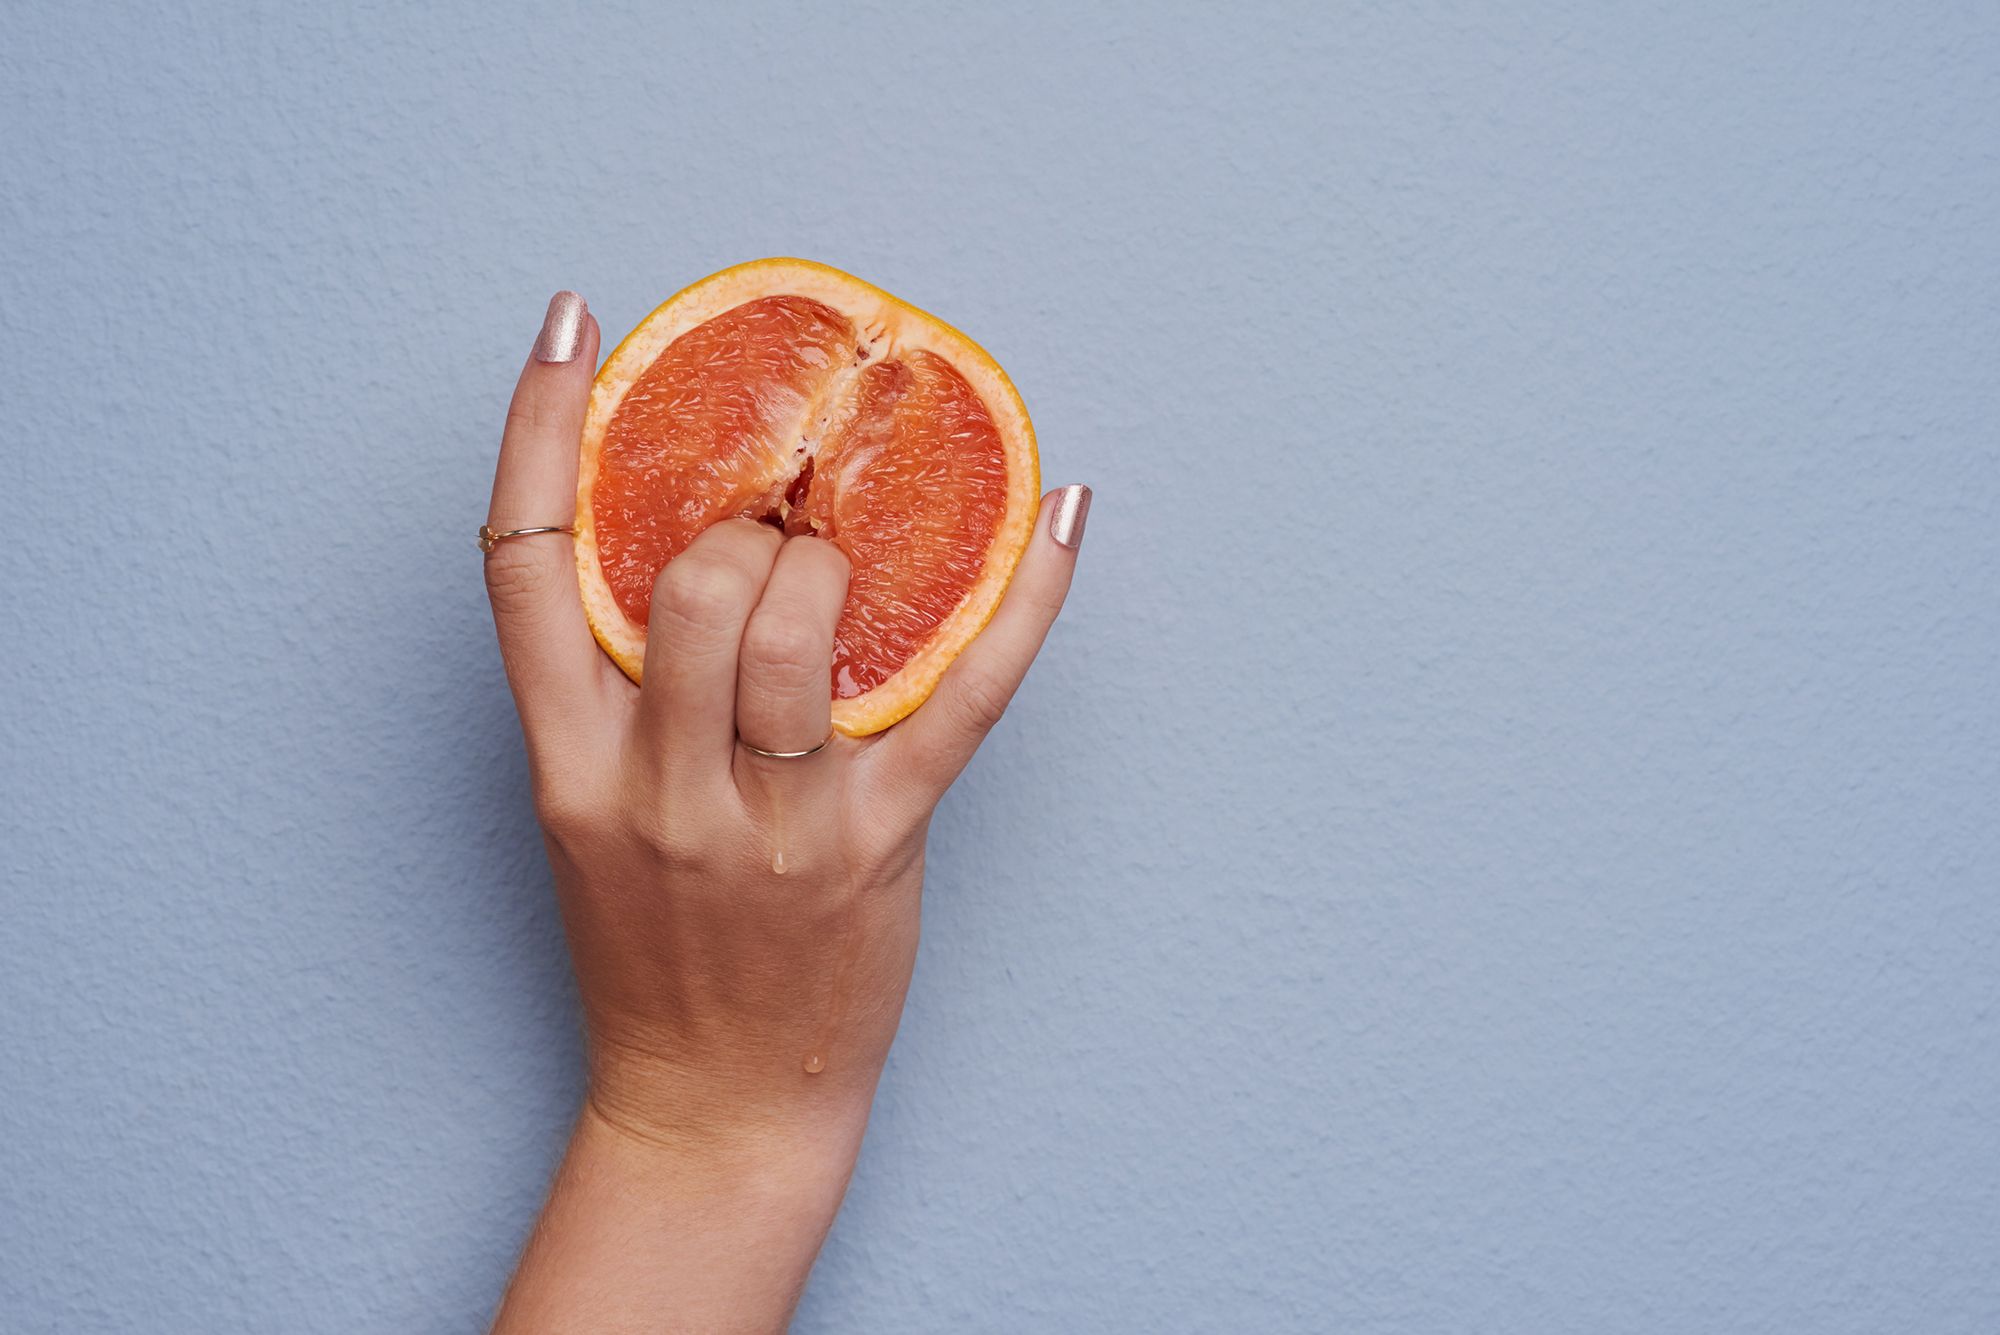 Zwei Finger, die in eine halbe Orange eingeführt werden